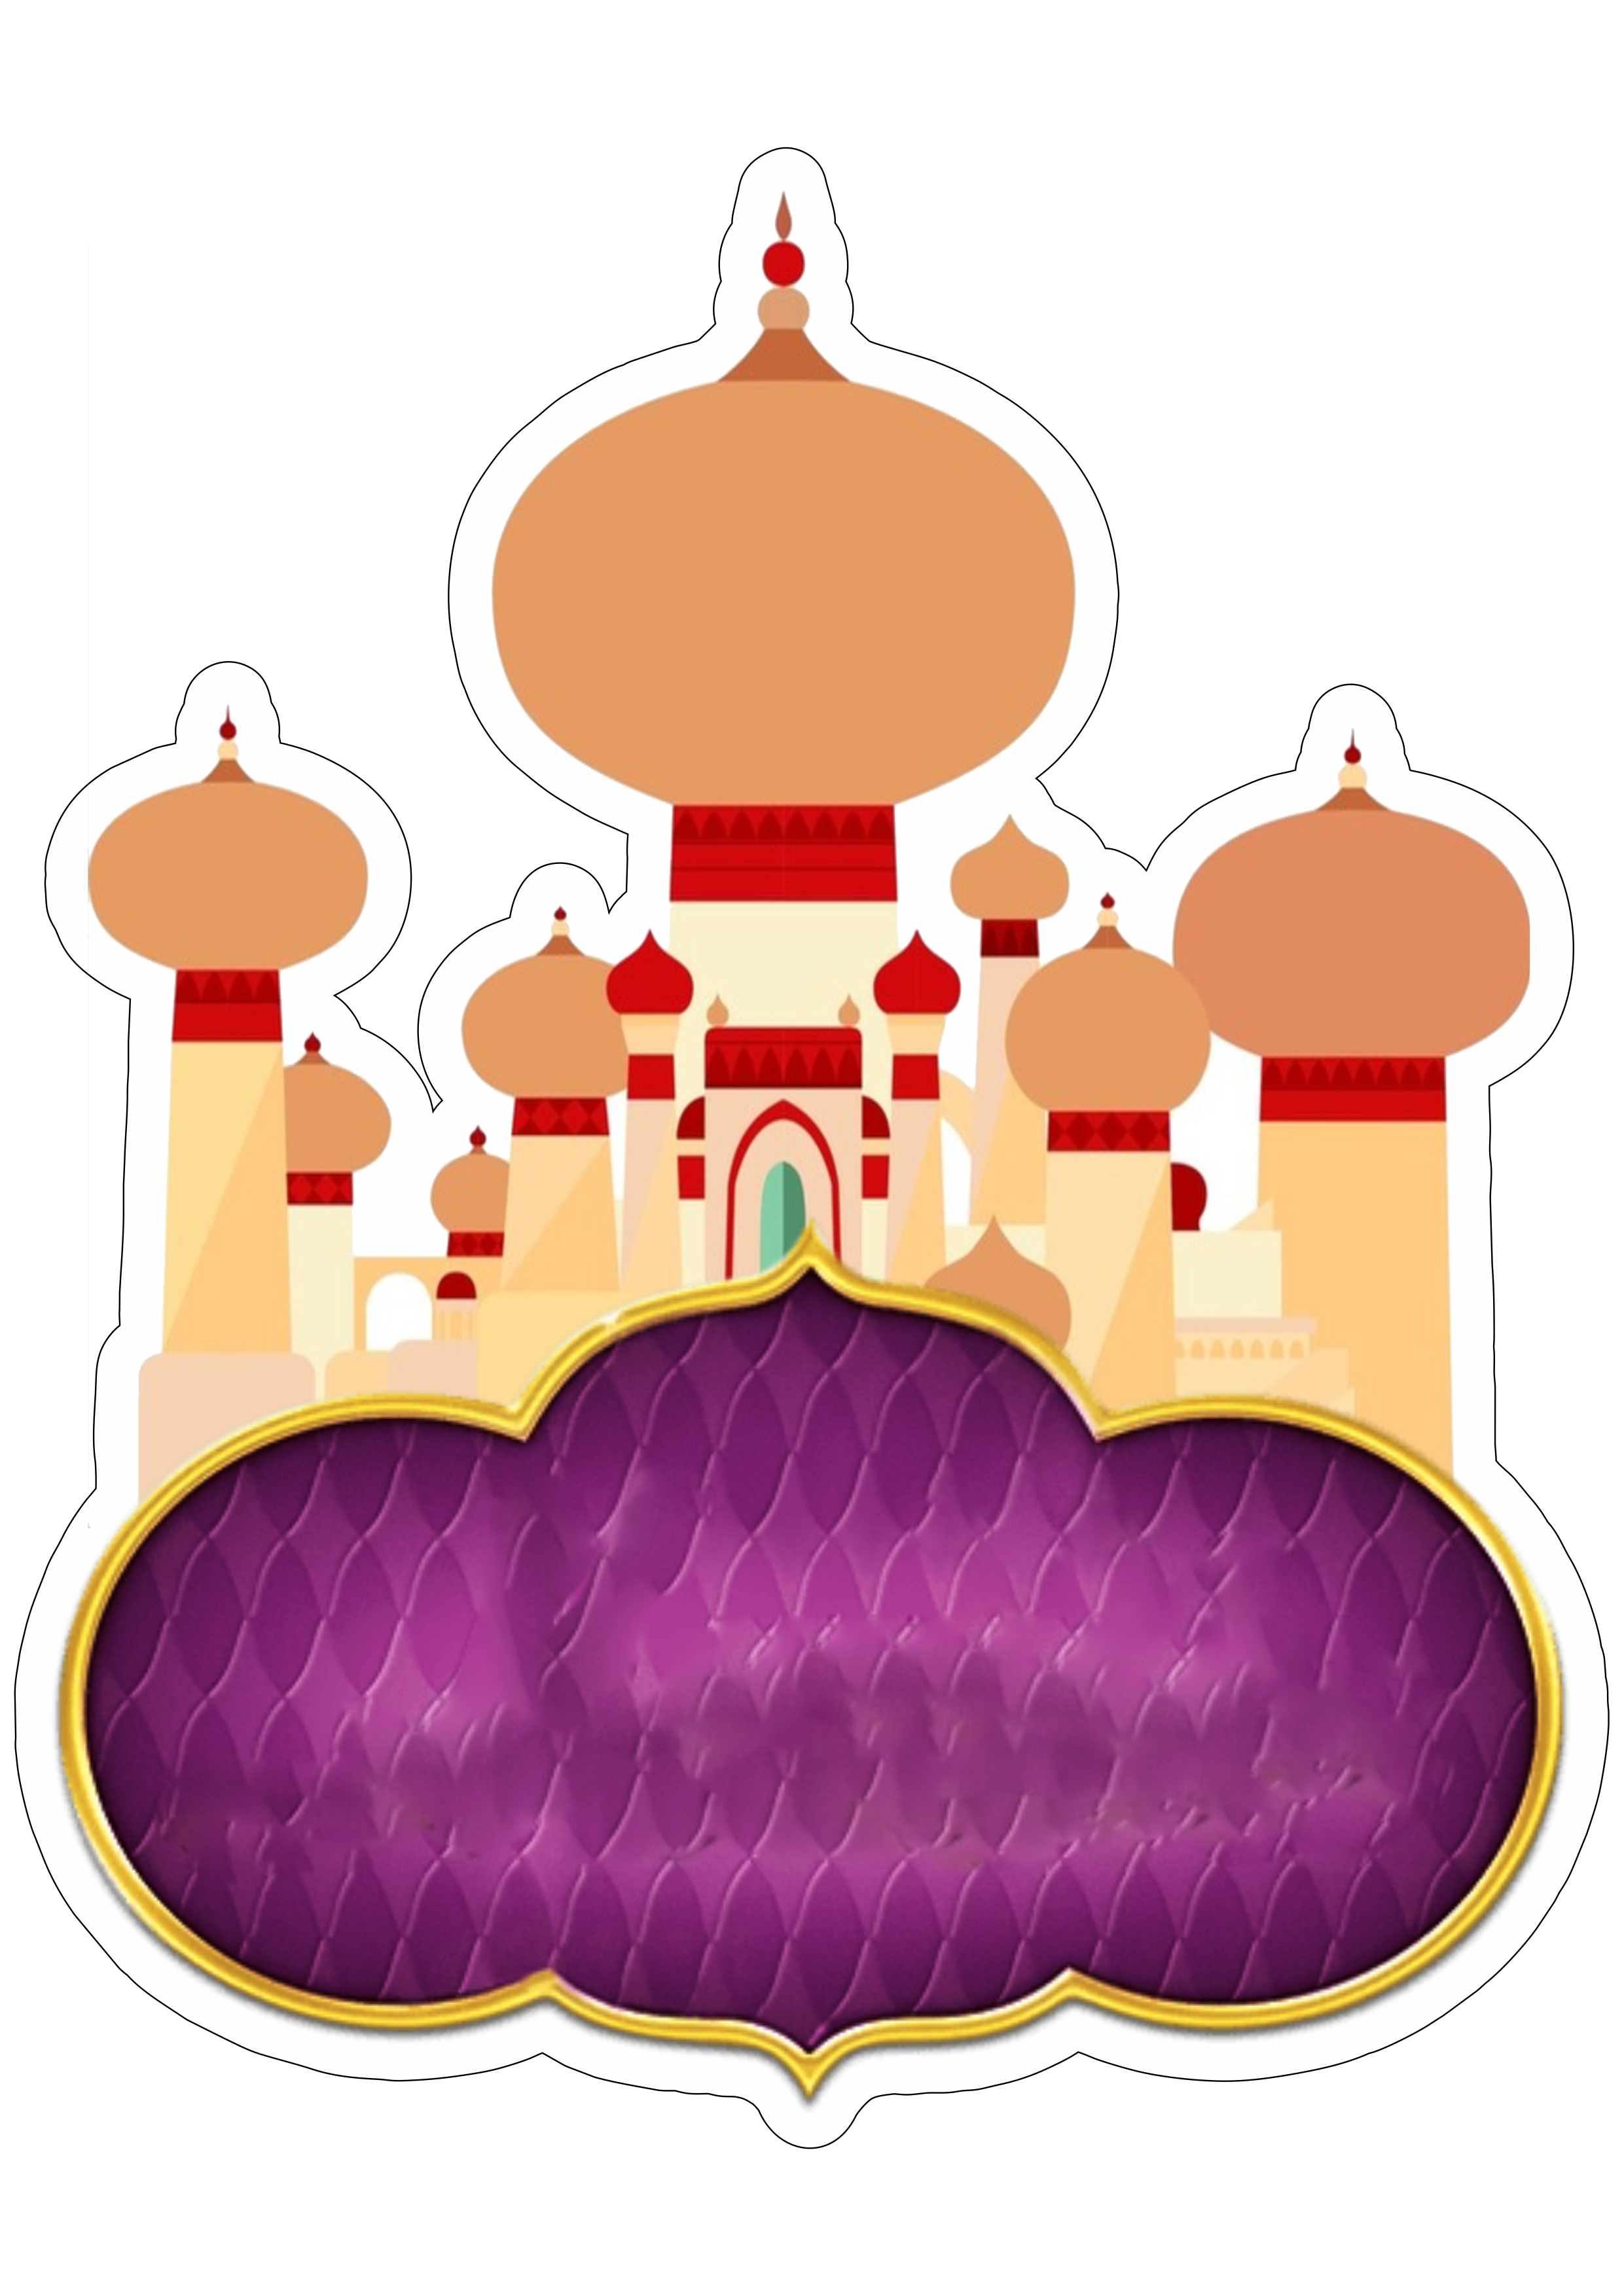 Topo de bolo para imprimir princesas disney animação infantil festa de  aniversário rosa parabéns castelo coroa e carruagem png